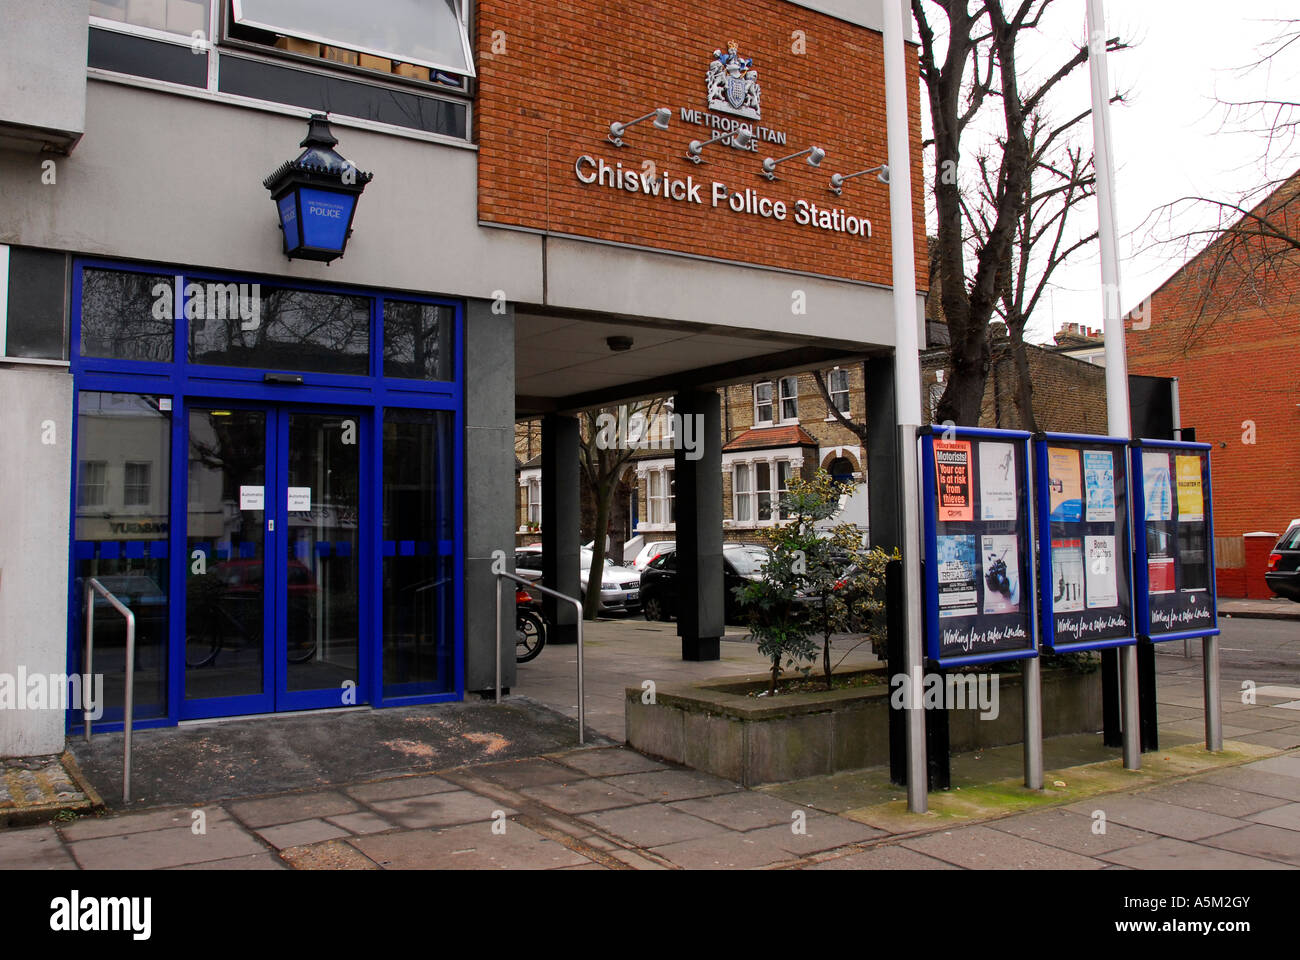 Vista general de la estación de policía de Chiswick, Chiswick, al oeste de Londres, Reino Unido. Foto de stock